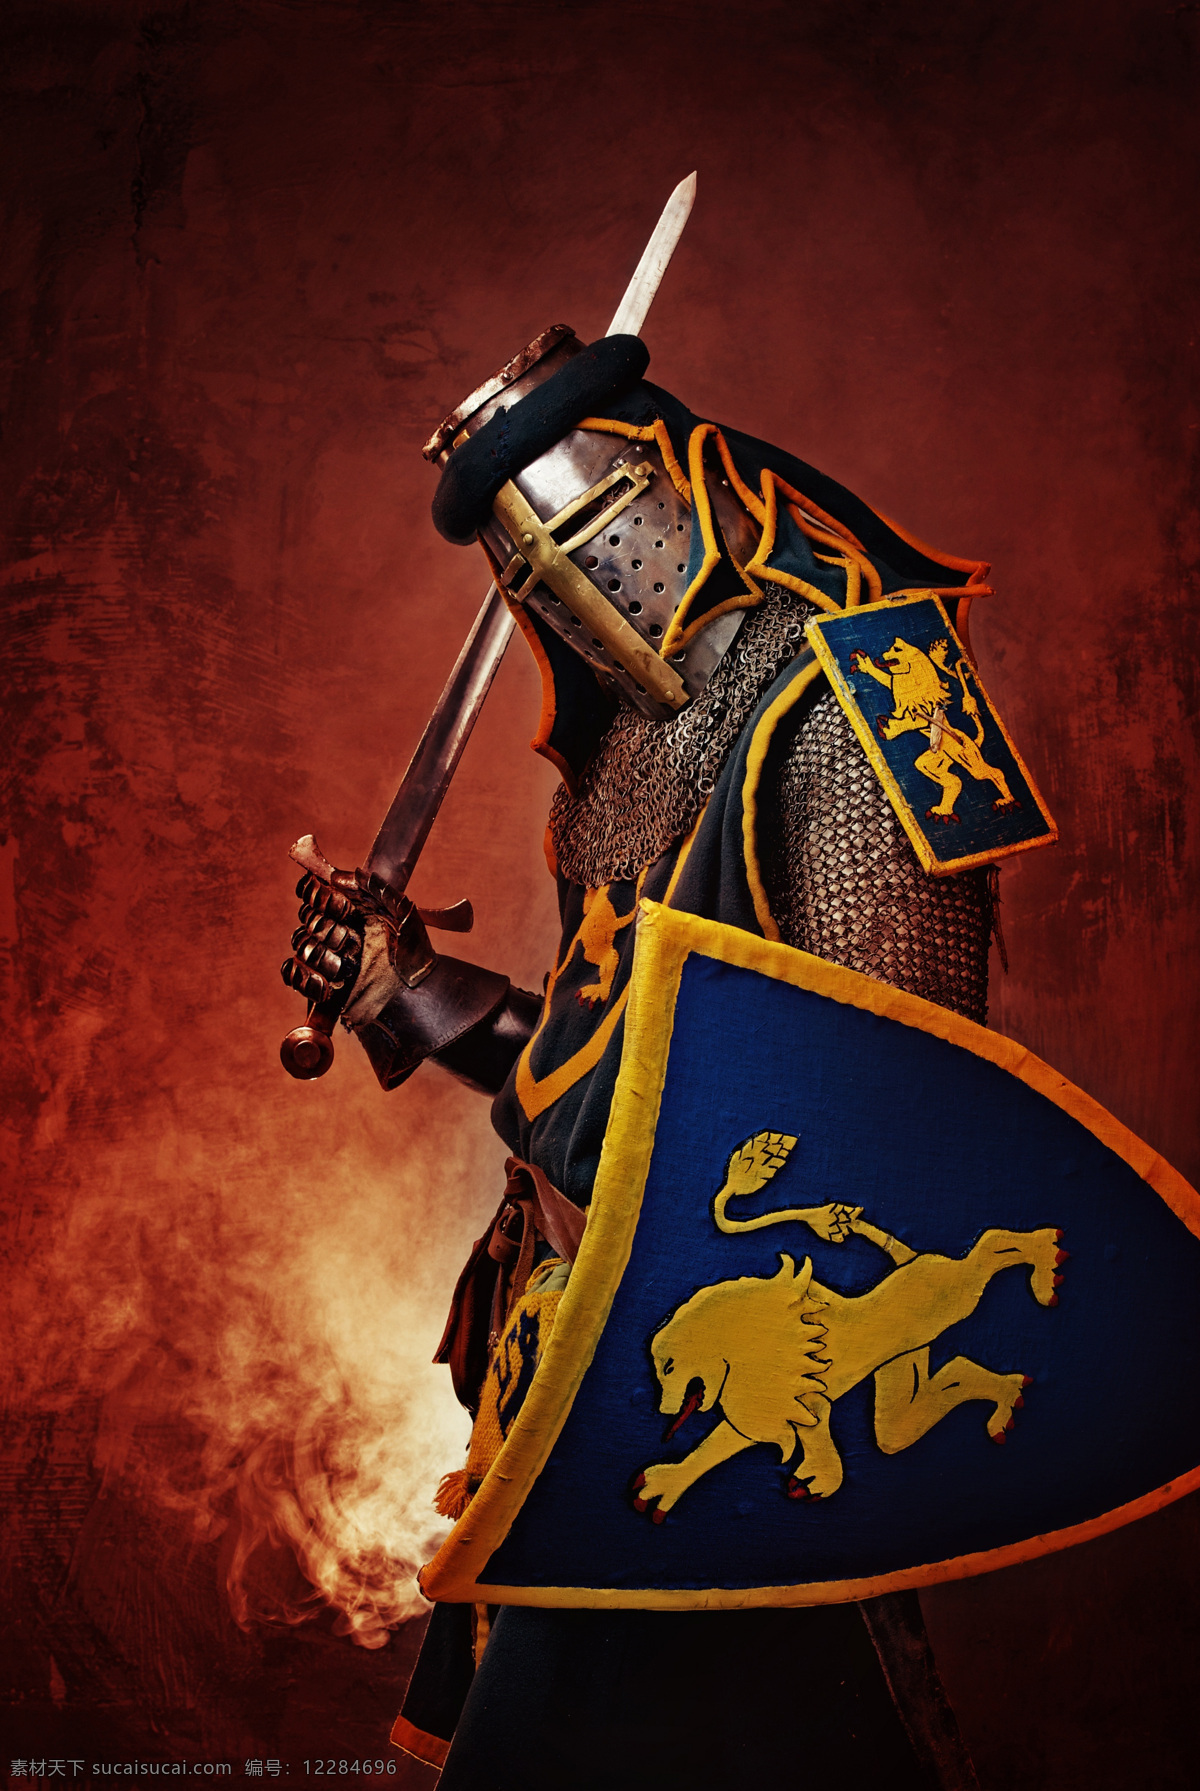 中世纪 骑士 盔甲 头盔 长剑 大剑 盾牌 威武 战斗 男人图片 人物图片